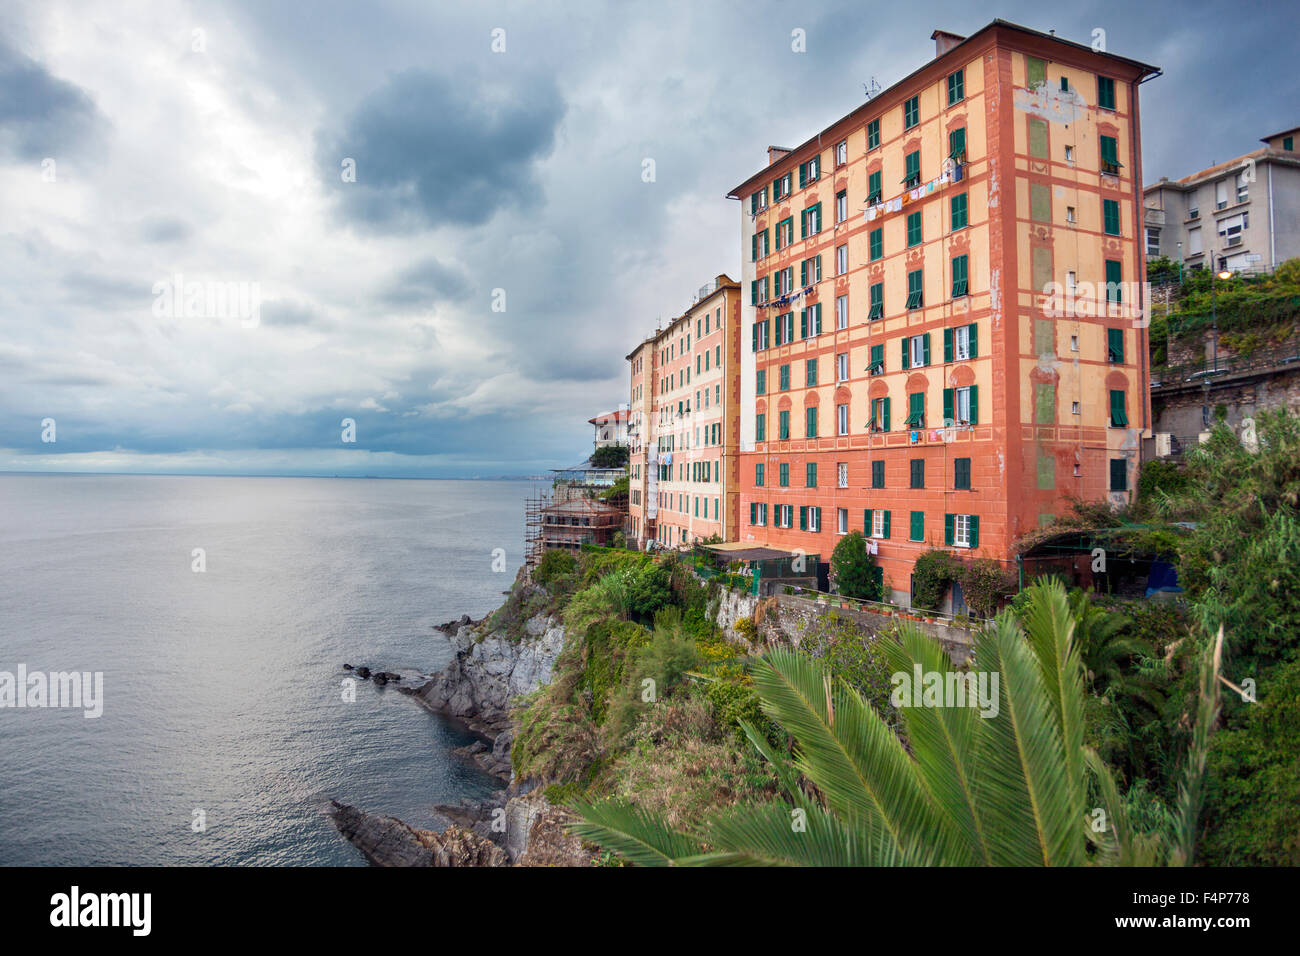 Blocchi di appartamenti sulle scogliere sul mare a Camogli, Italia Foto Stock